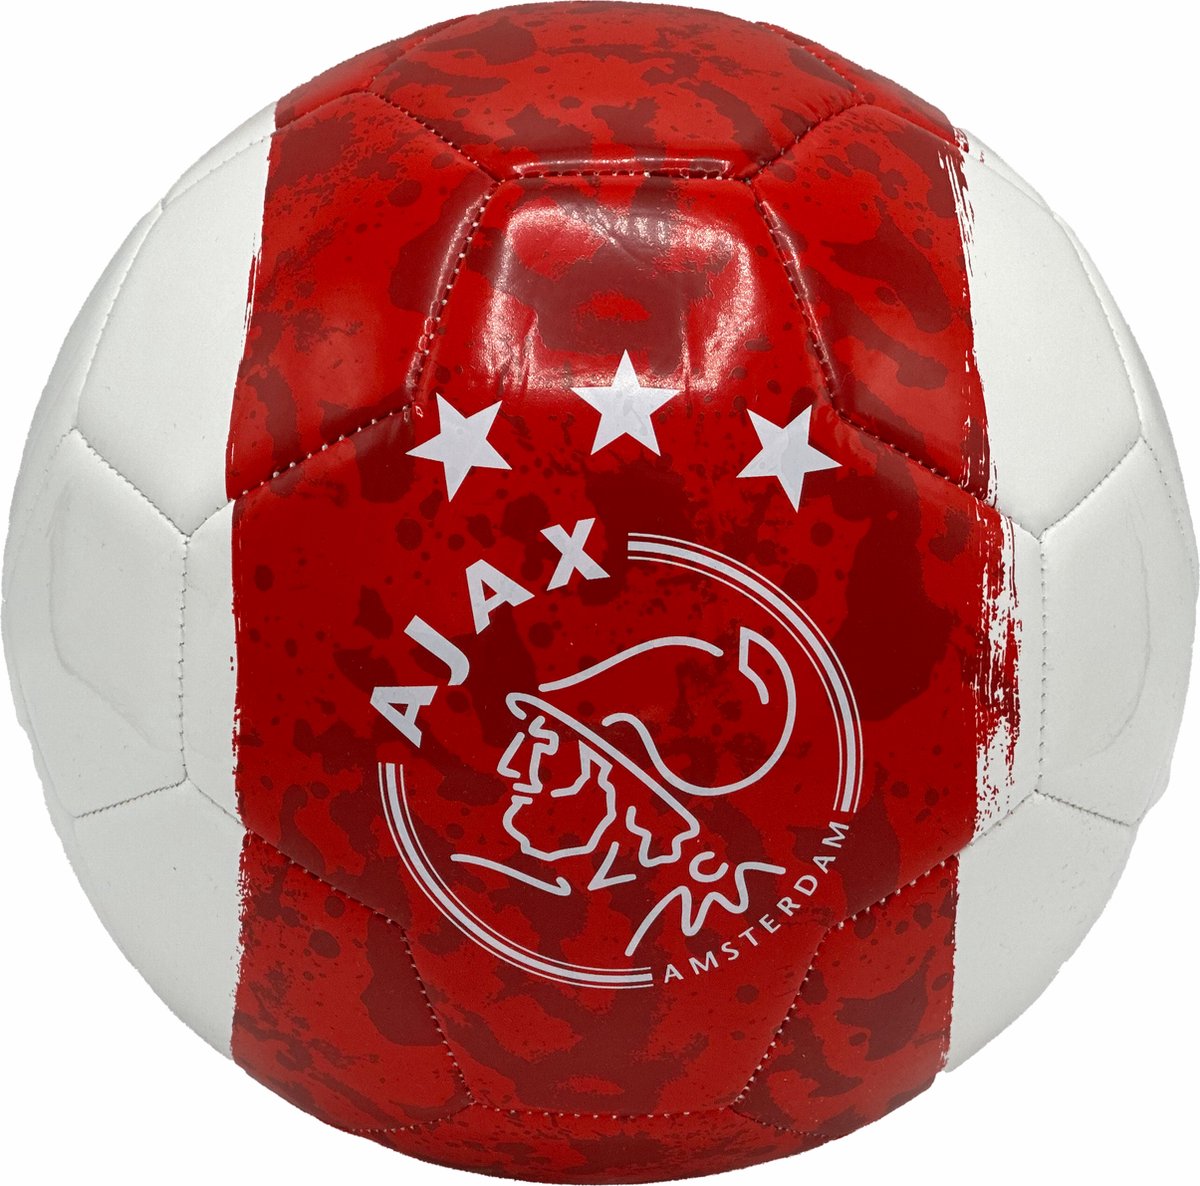 Ajax Voetbal size 5 Wit Rood Wit Baan Gemeleerd - Ajax Bal - Bergwijn - Brobbey - Ajax Voetbal -Ajax Amsterdam - - AFC Ajax